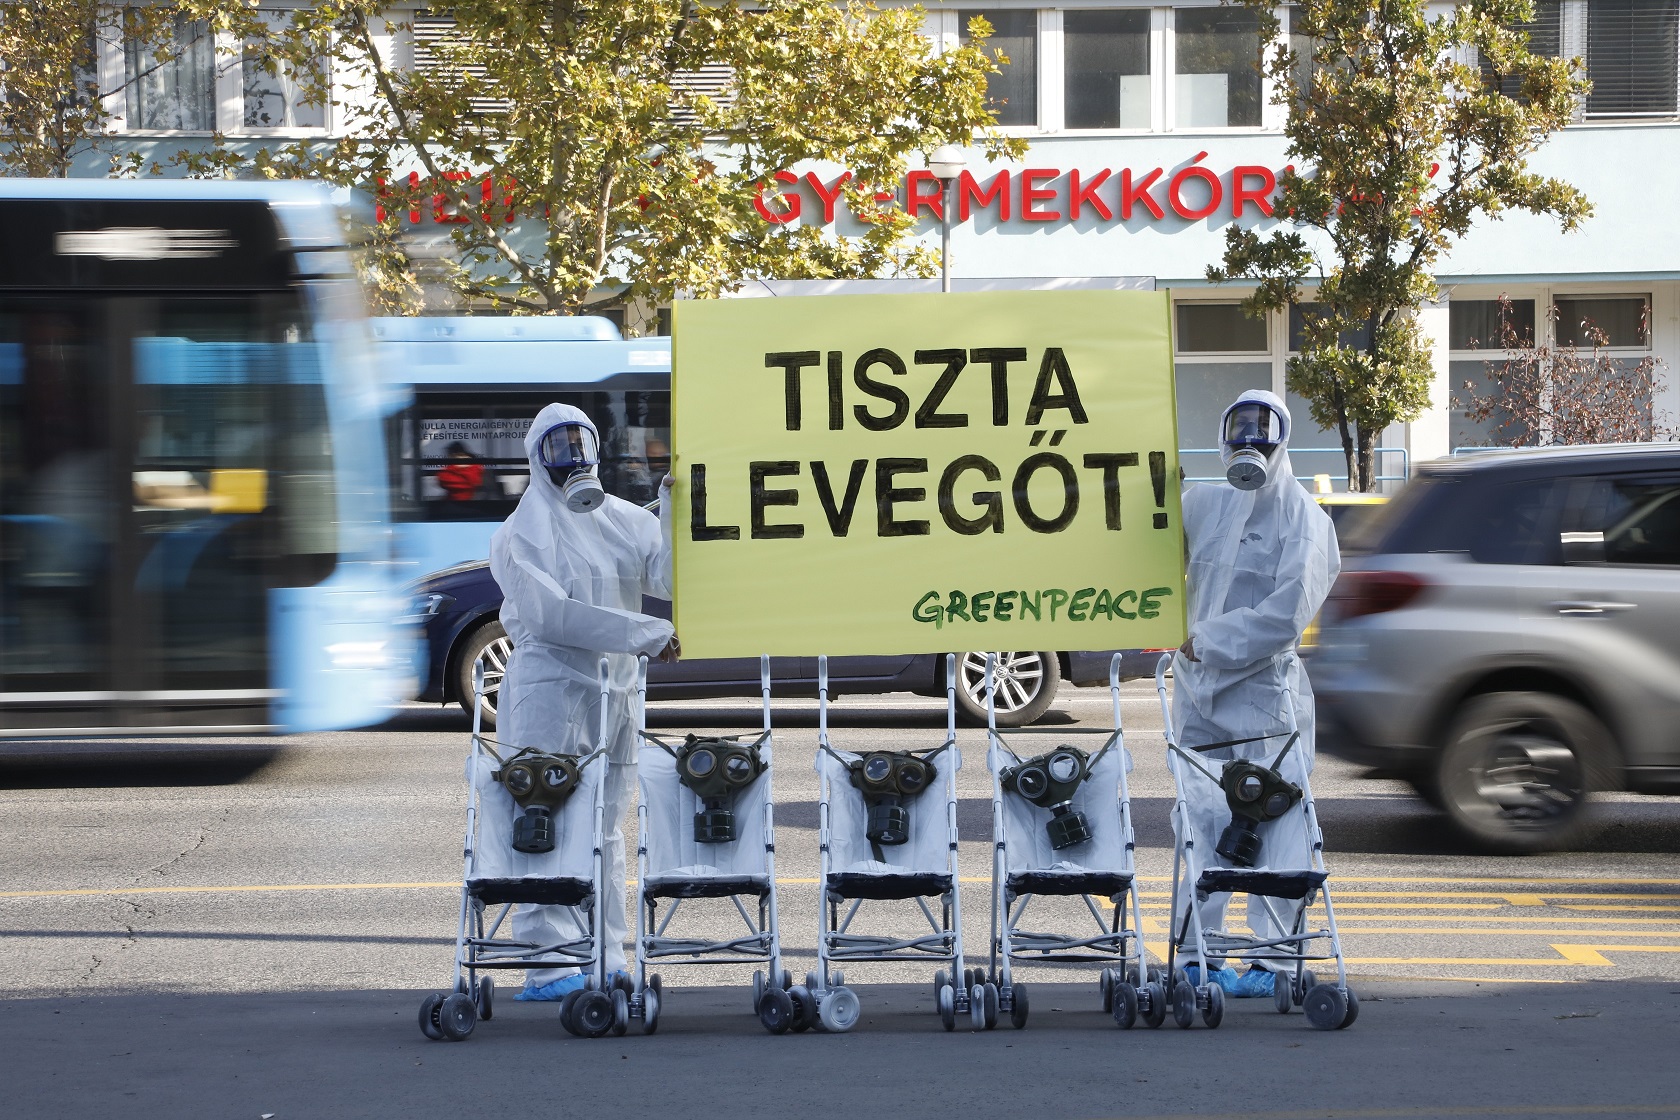 Kockázatos a légszennyezettség a kórházaknál - Greenpeace Magyarország